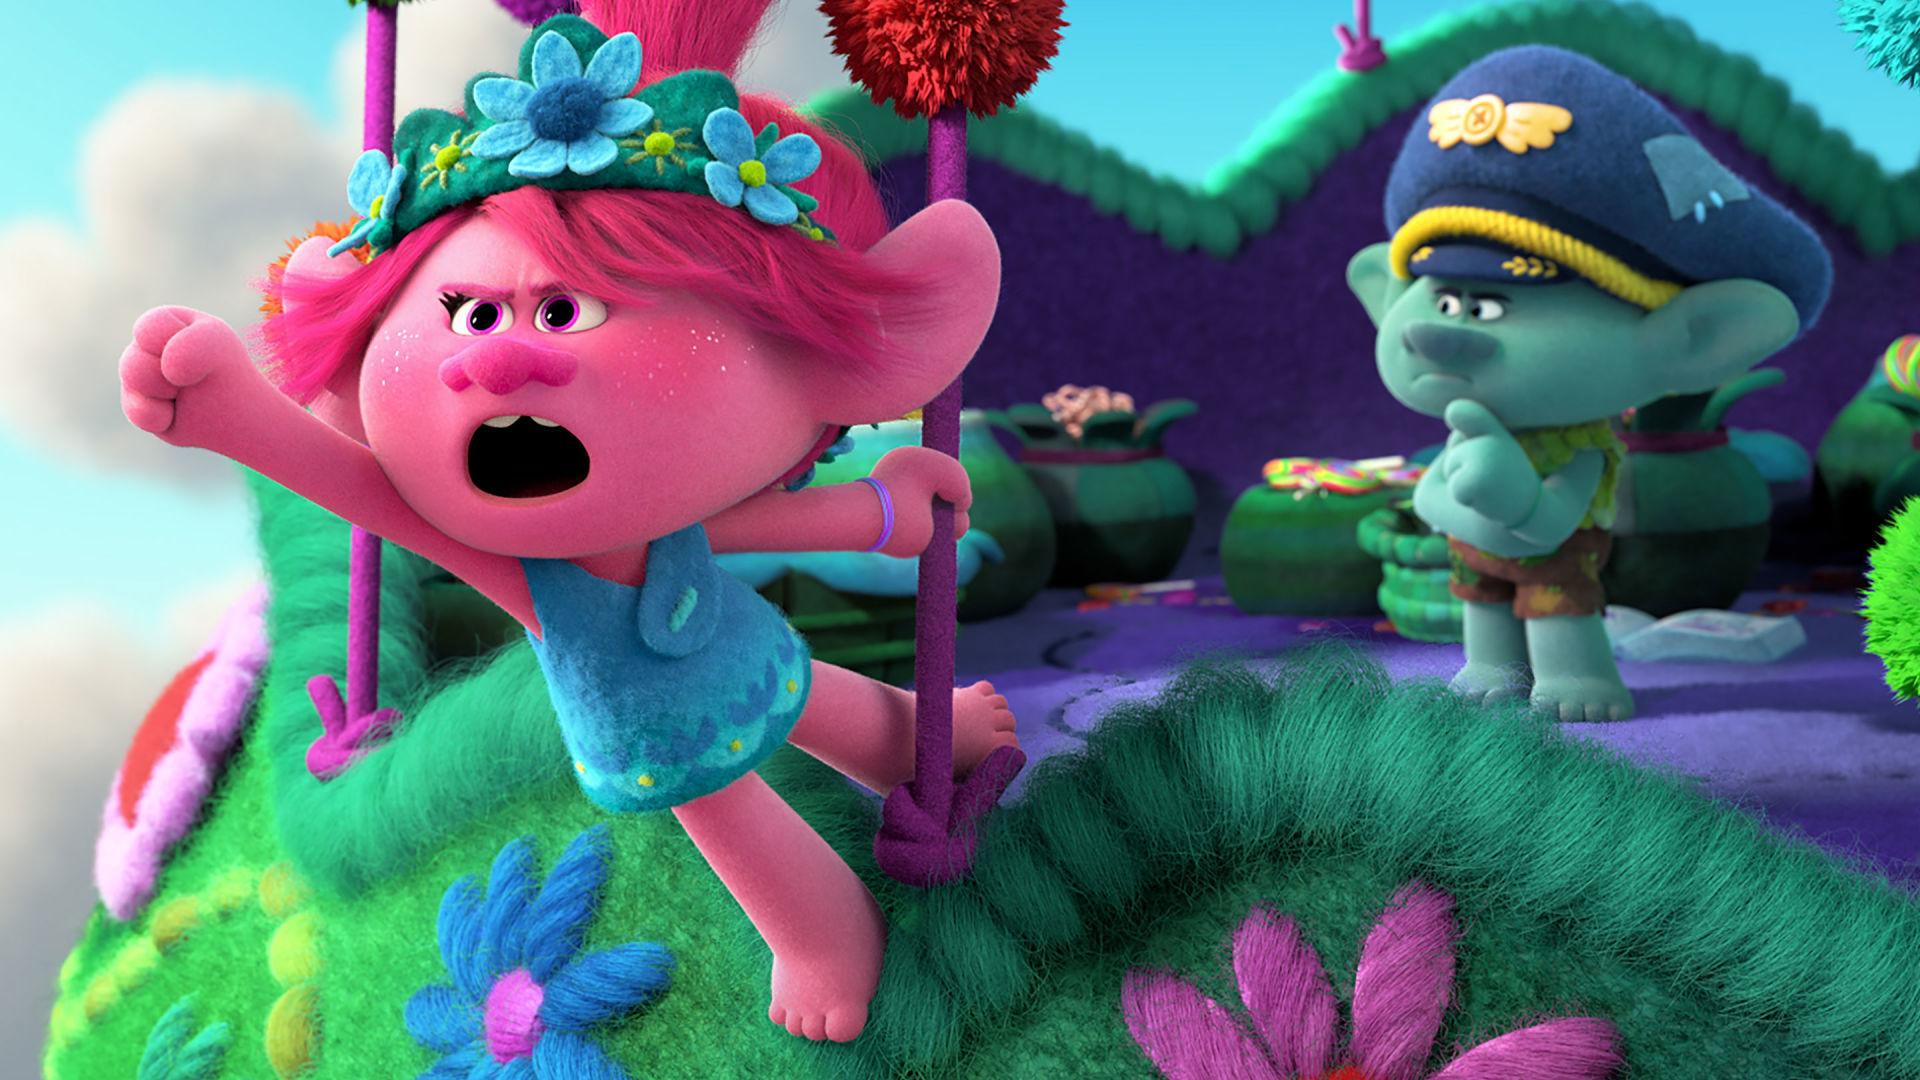 Disegni da colorare Poppy e Trolls: i personaggi dei cartoni animati insoliti sono sempre speciali per i bambini